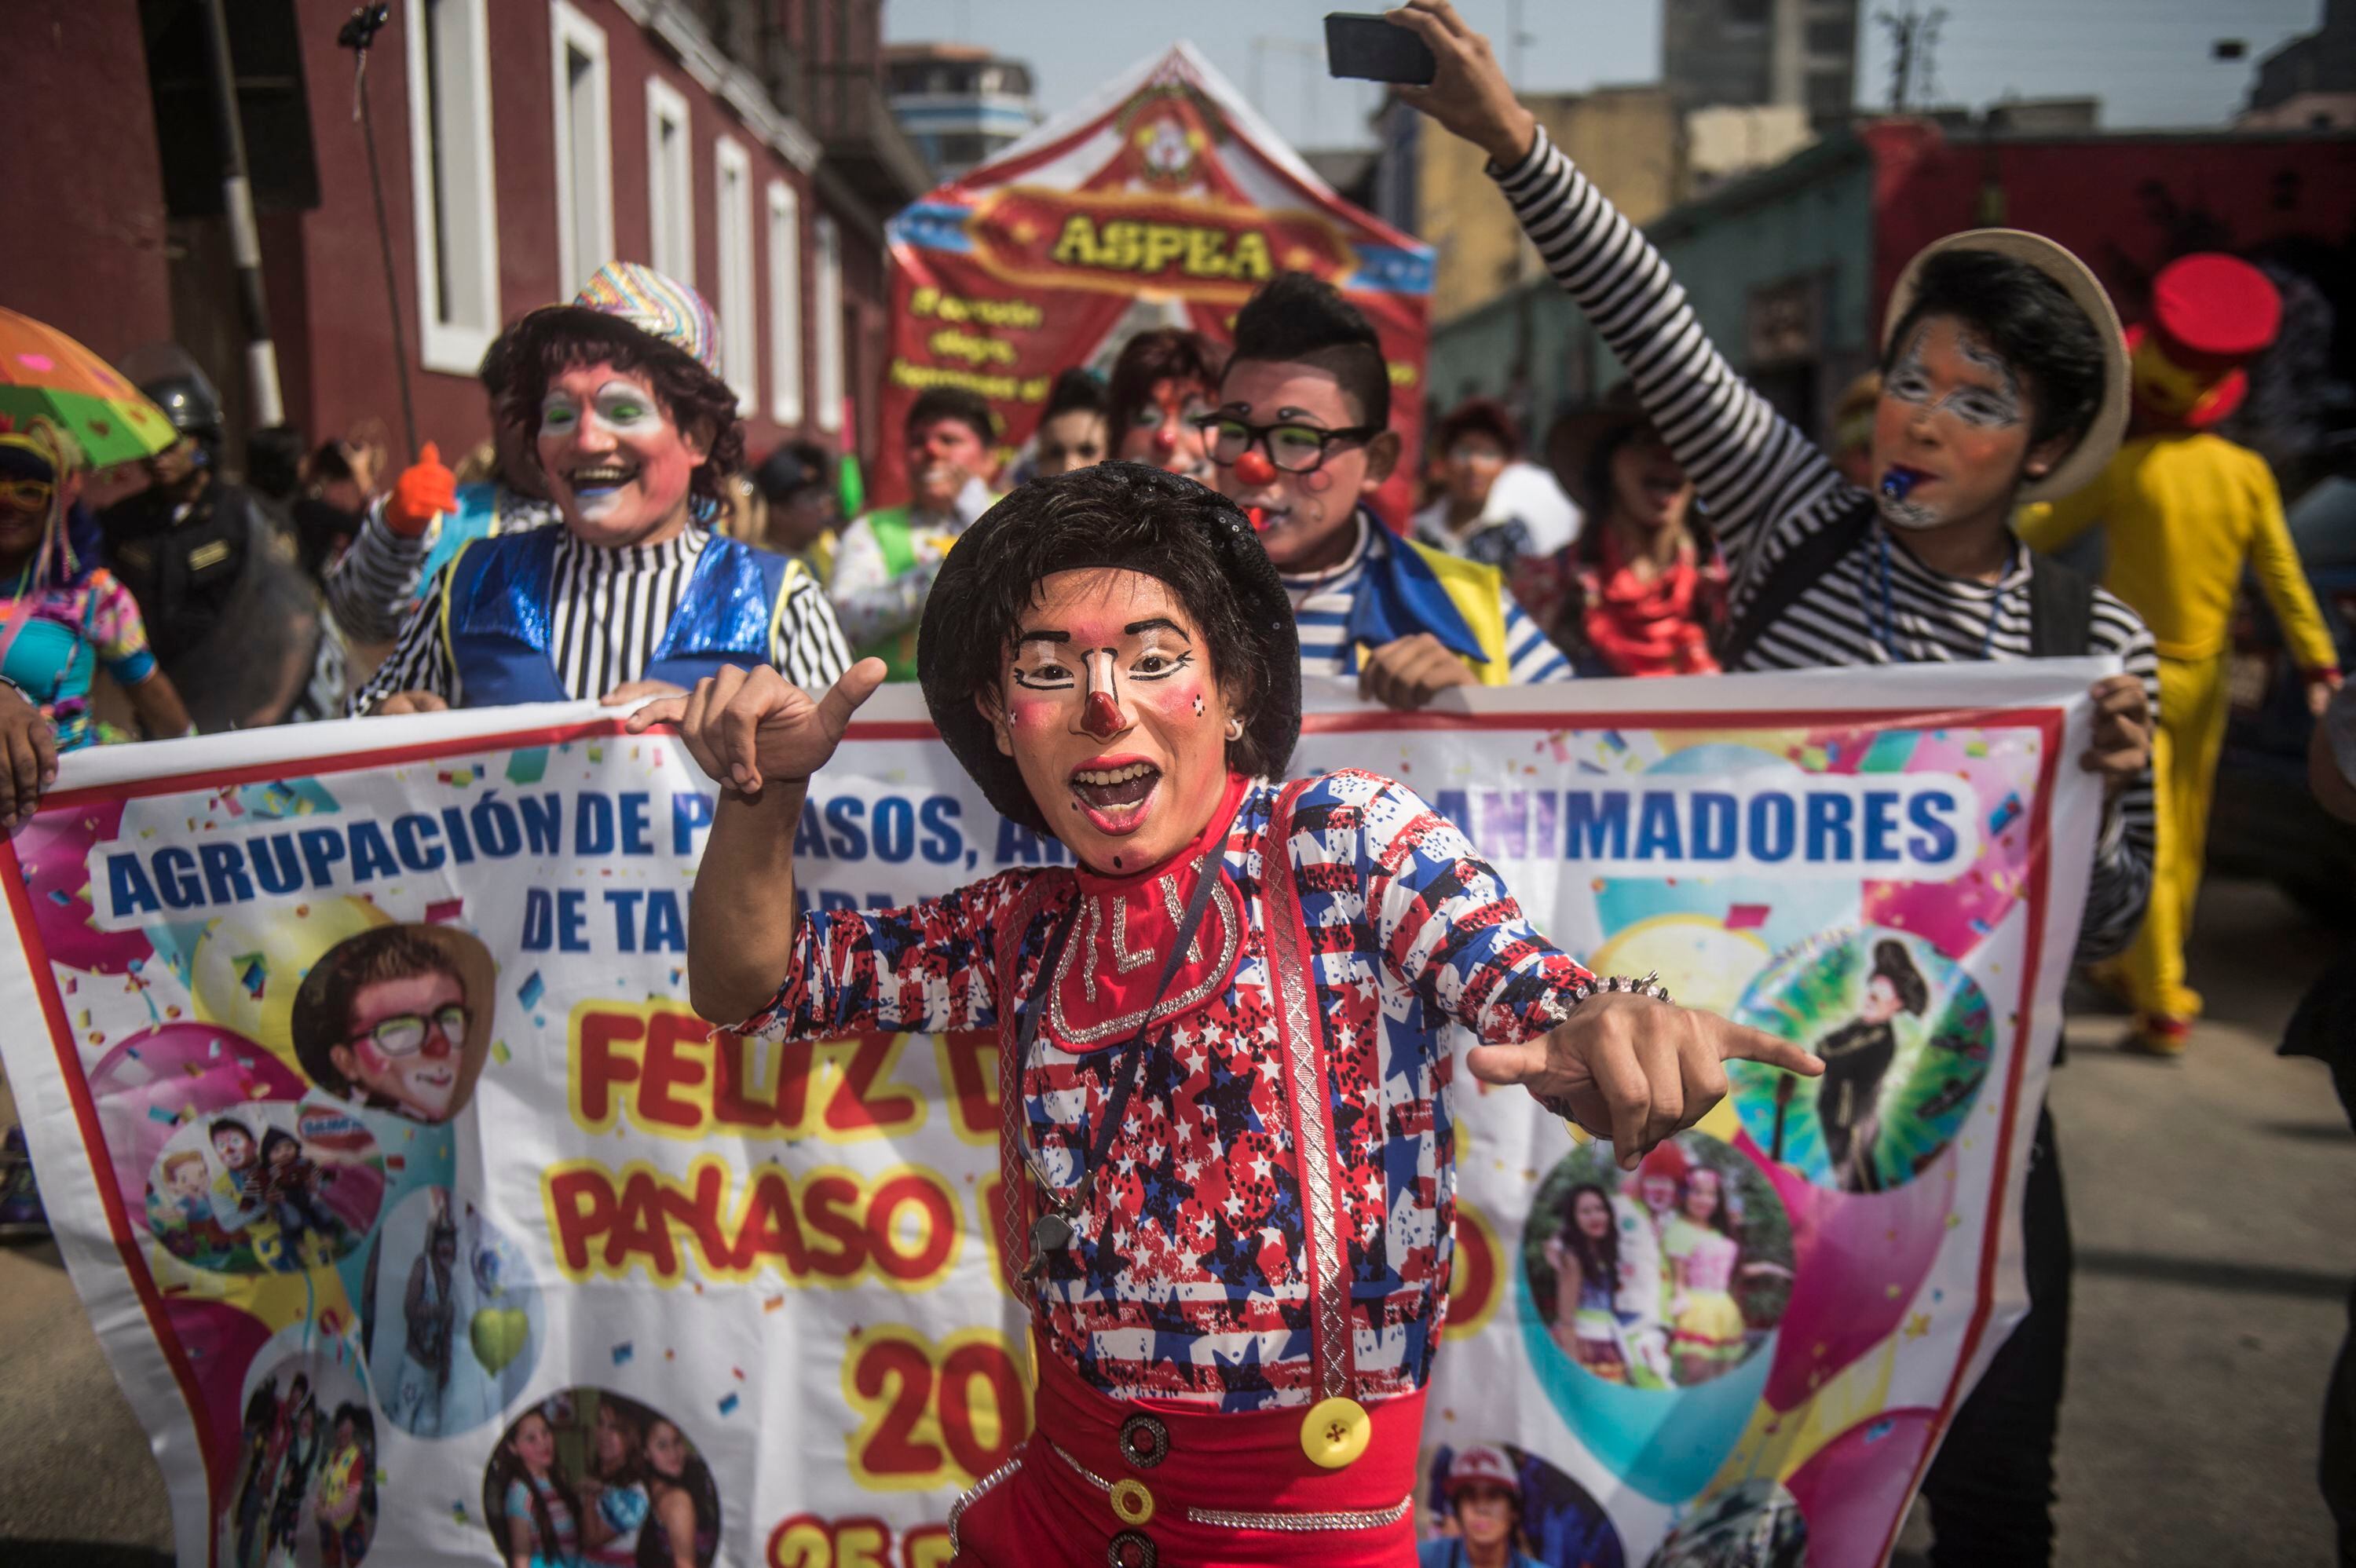 Los payasos forman parte de un gremio organizado que suele marchar cada 25 de mayo por las calles de la ciudad. (Photo by ERNESTO BENAVIDES / AFP)